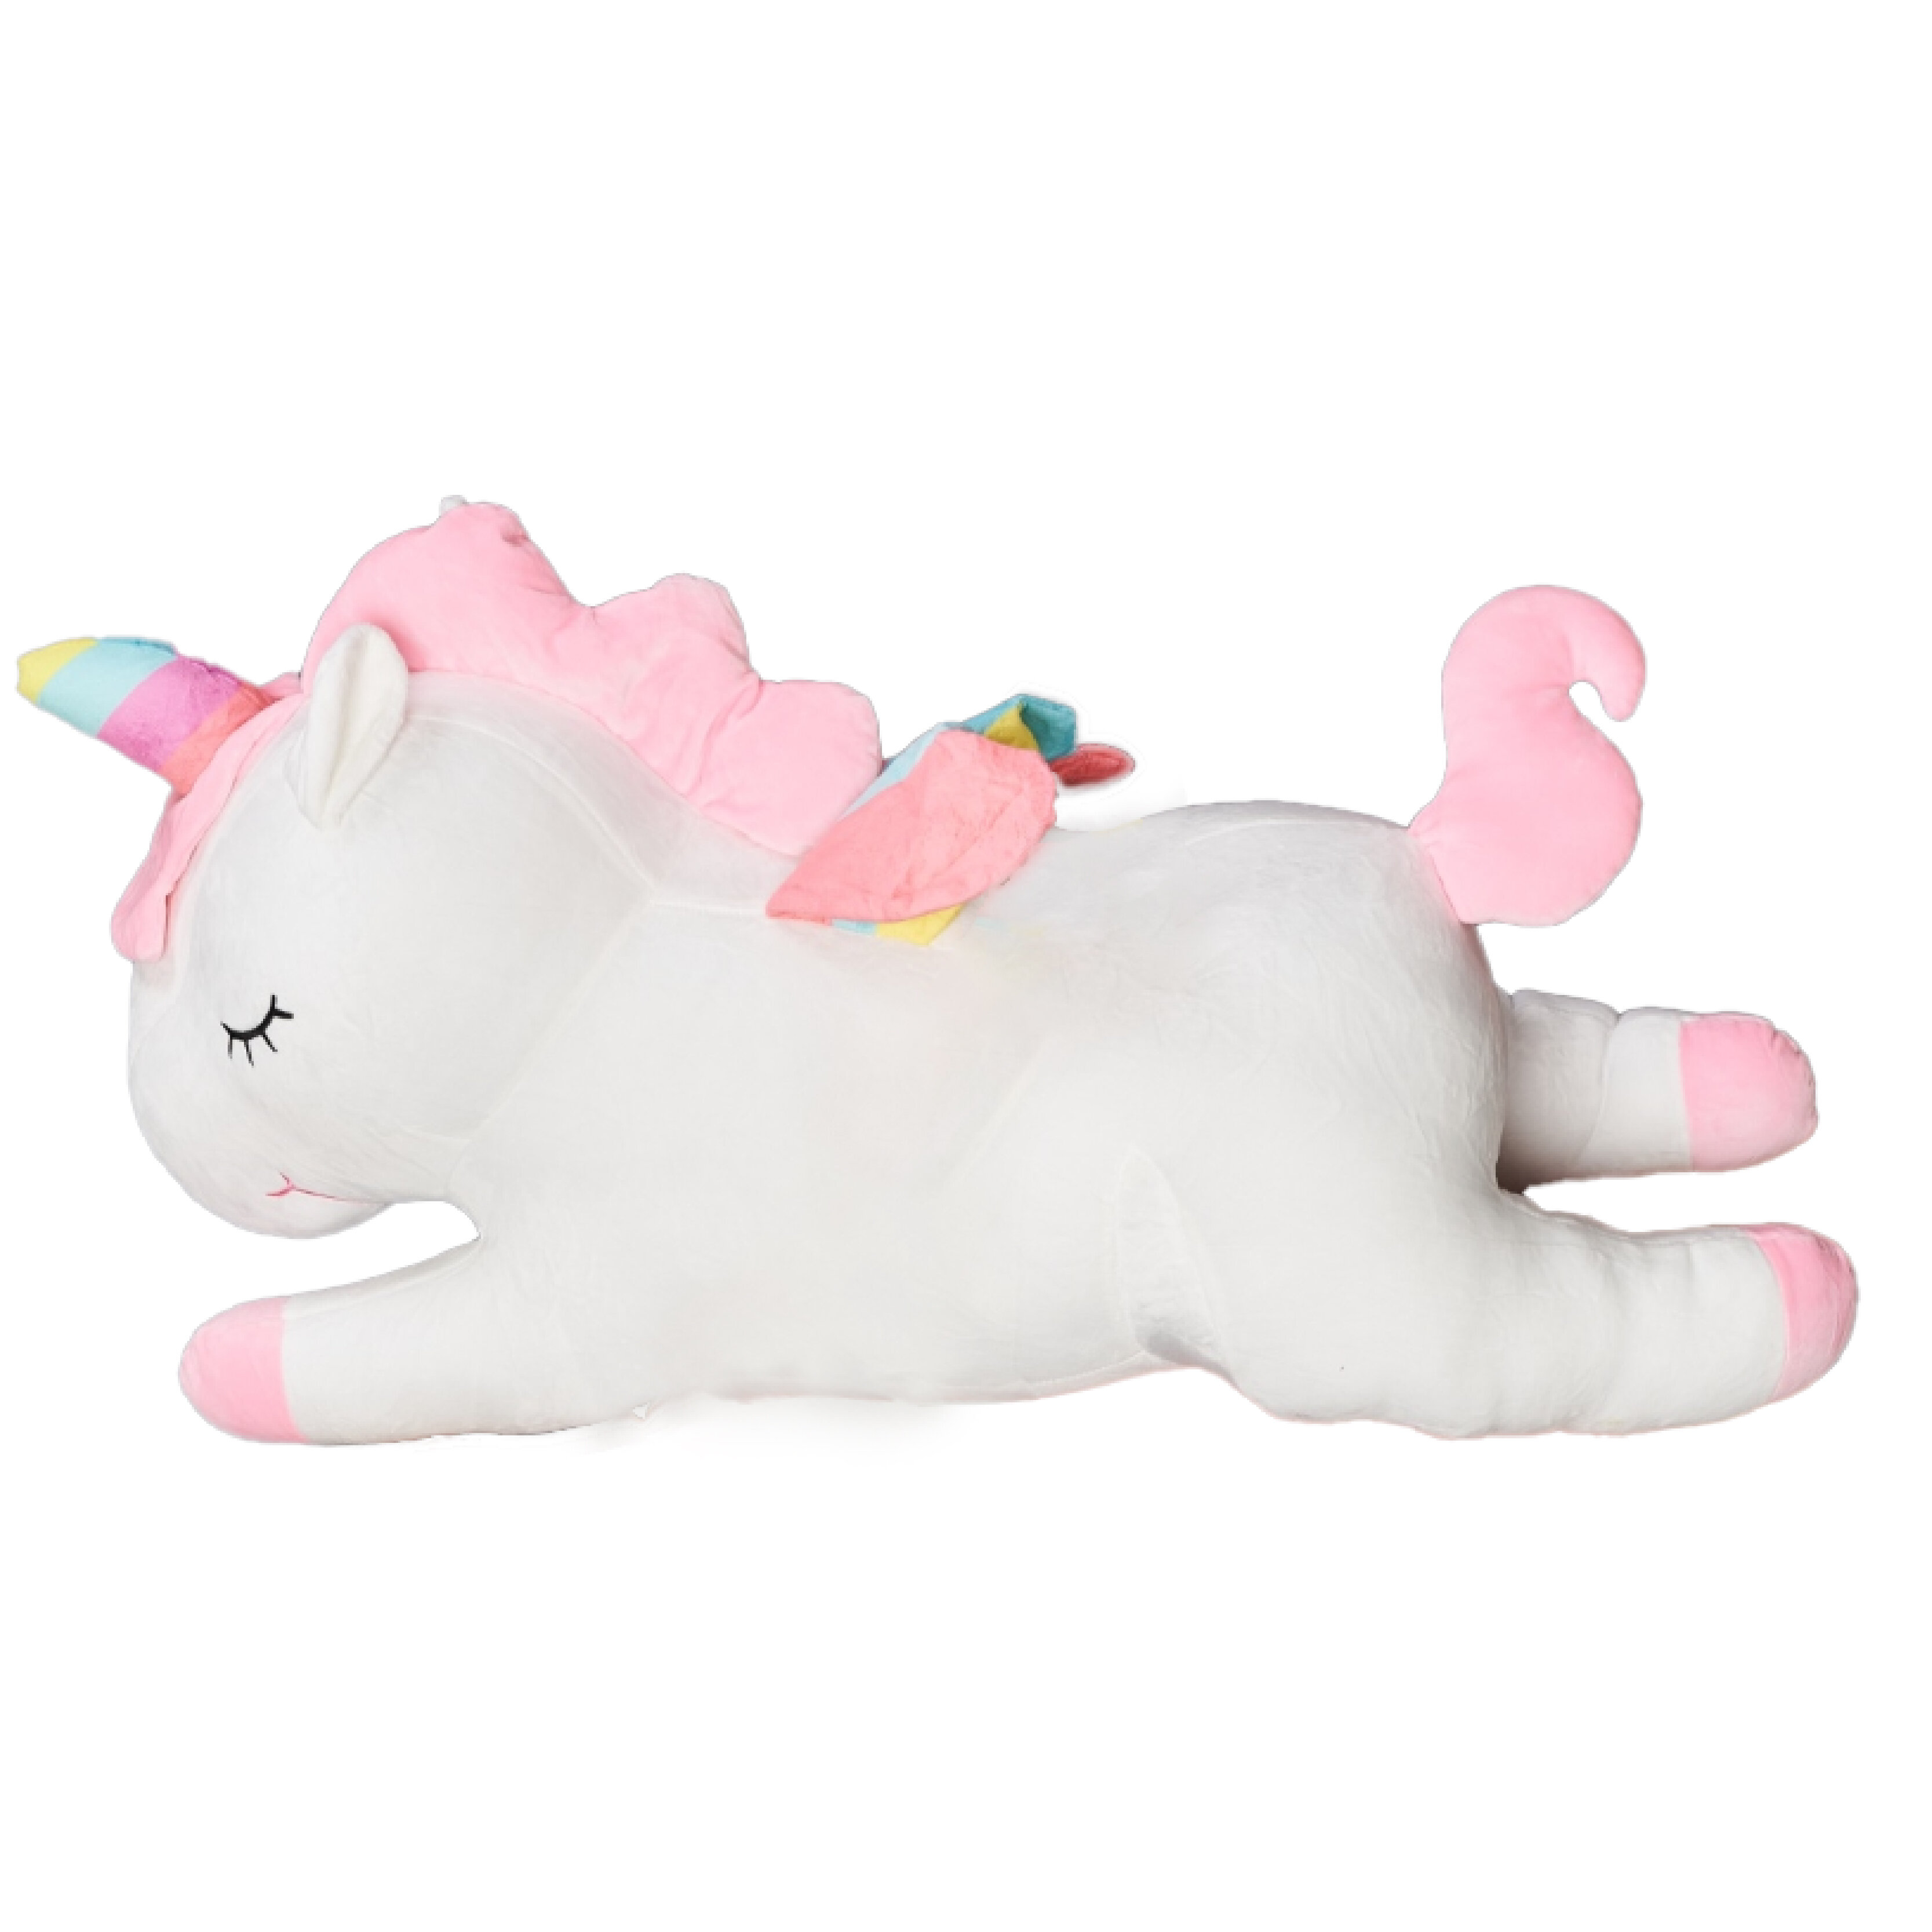 Мягкая игрушка La-LaLand Единорог Спящий, белый, 60 см